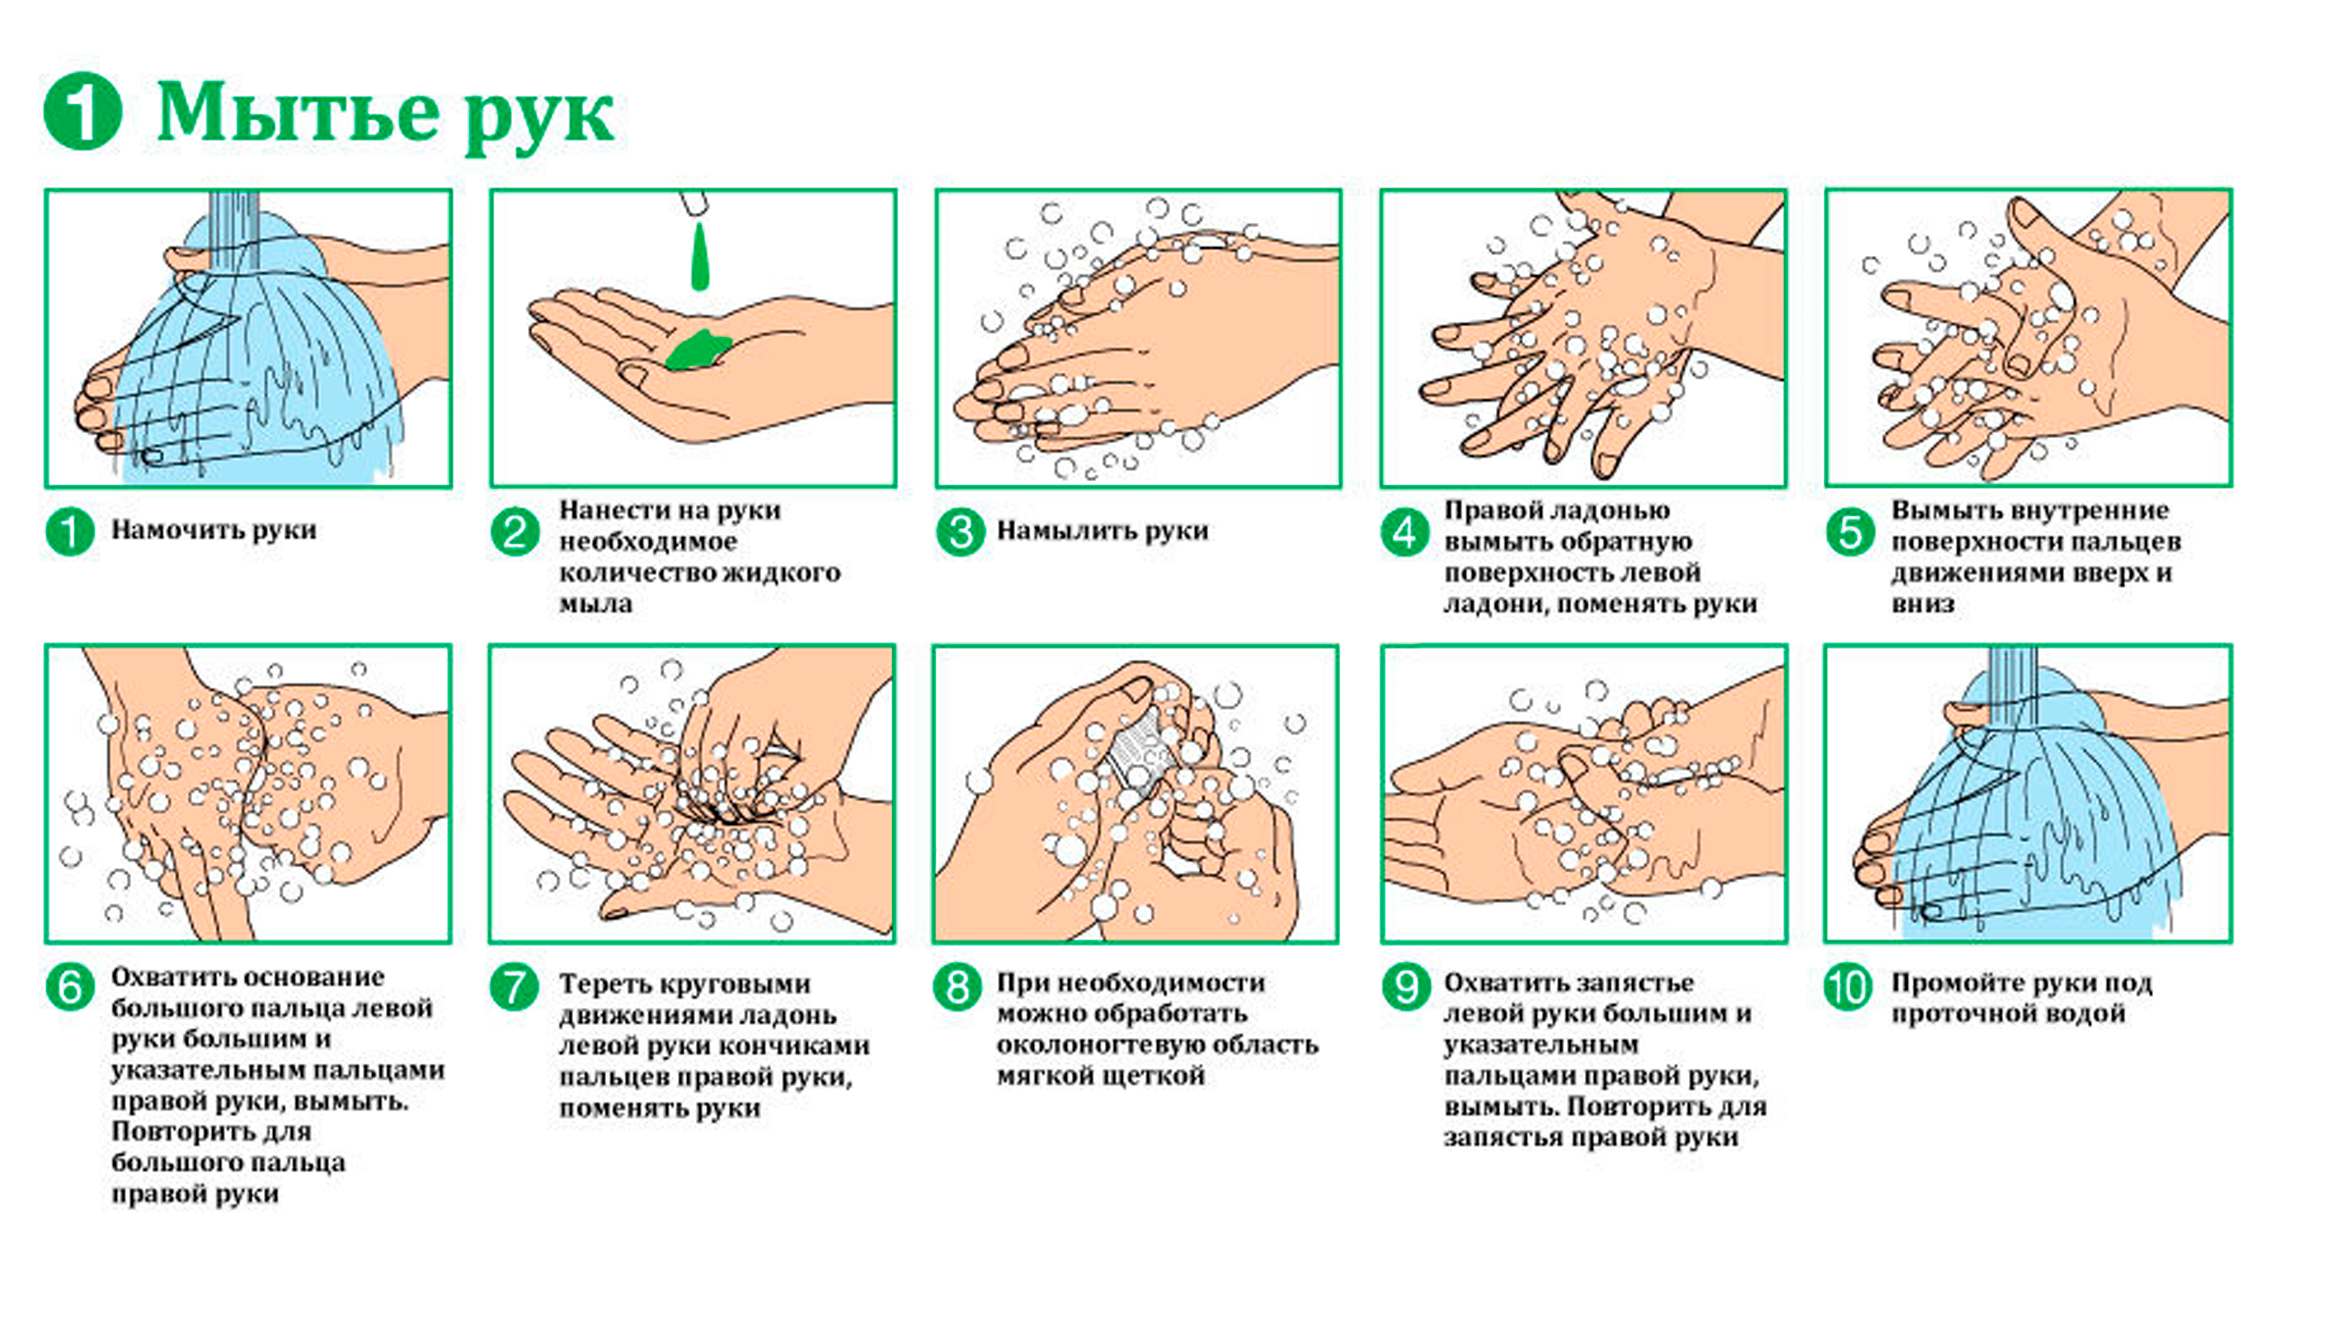 Мытье рук относится к. Гигиенический метод мытья рук алгоритм. Алгоритм обработки рук гигиеническим способом алгоритм. Схема гигиенического мытья рук медперсонала. Схема гигиенический способ мытья рук.